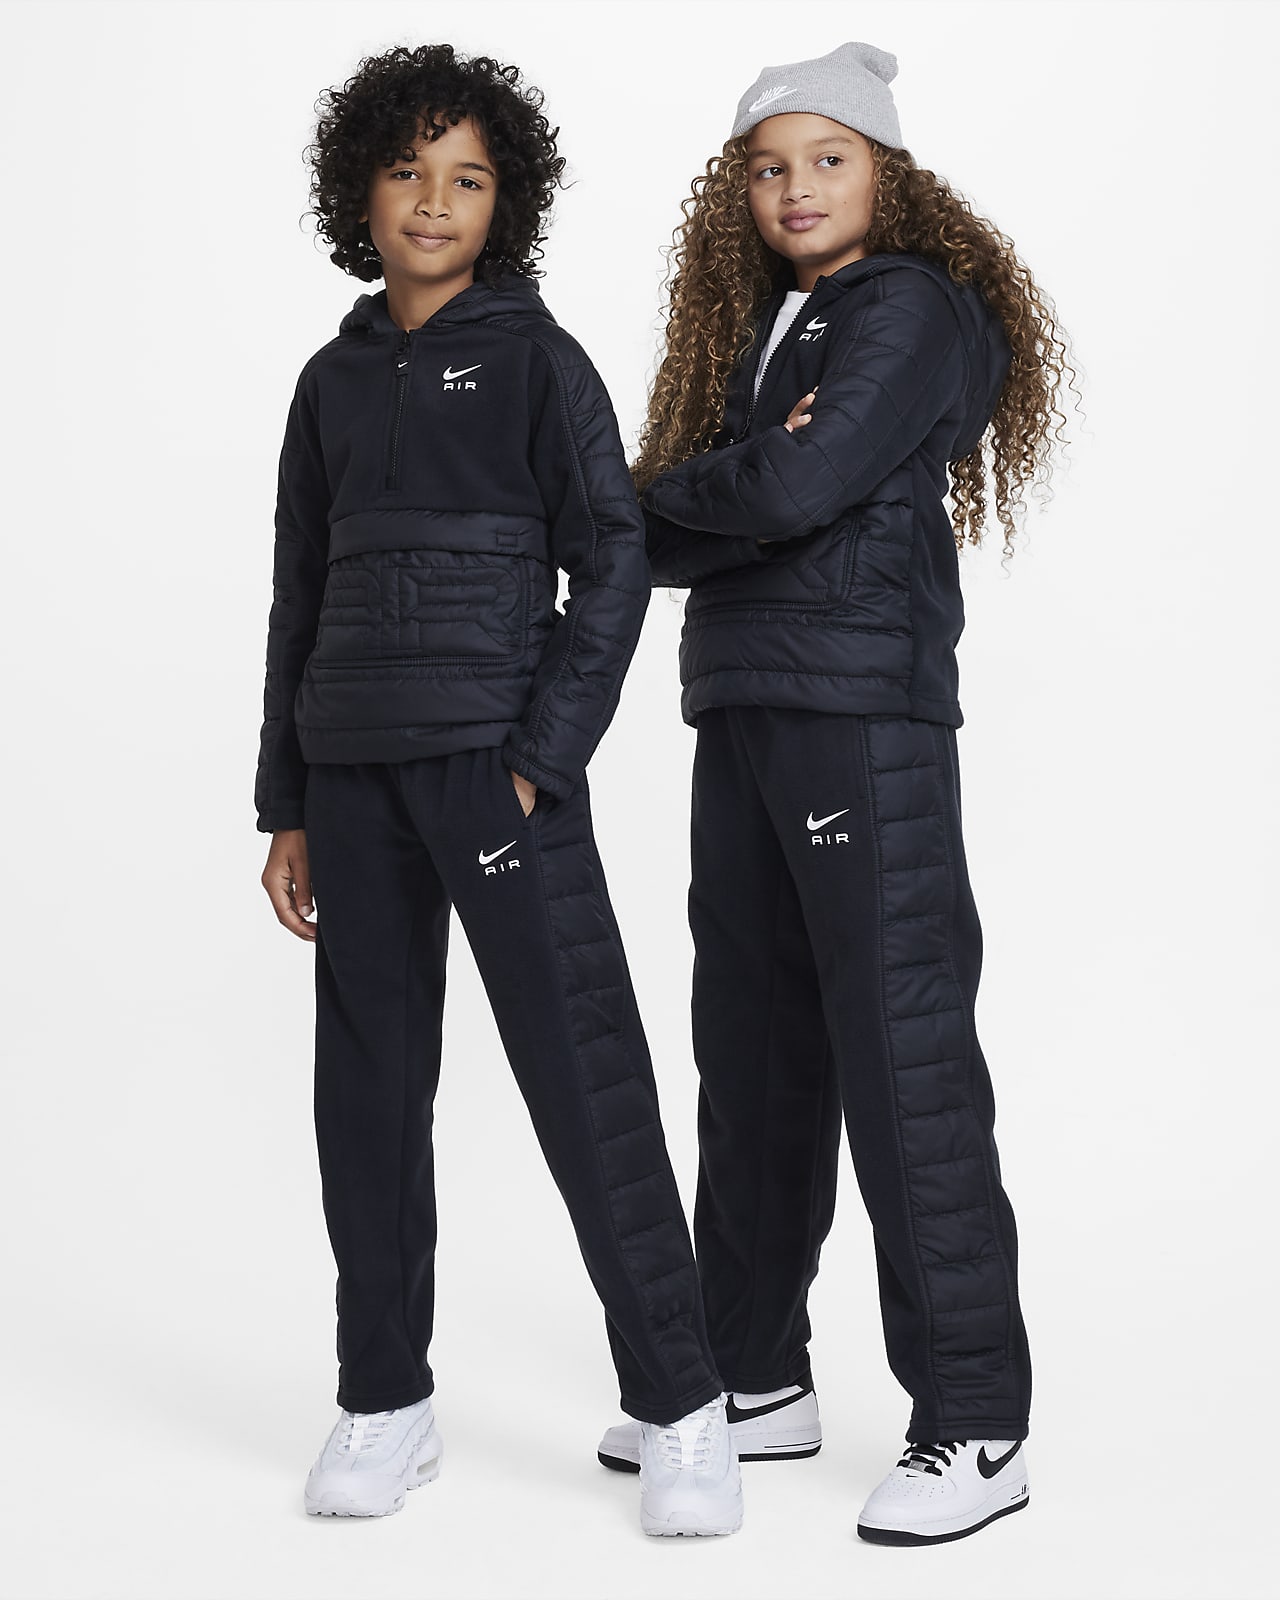 Zimní kalhoty Nike Air pro děti. Nike CZ